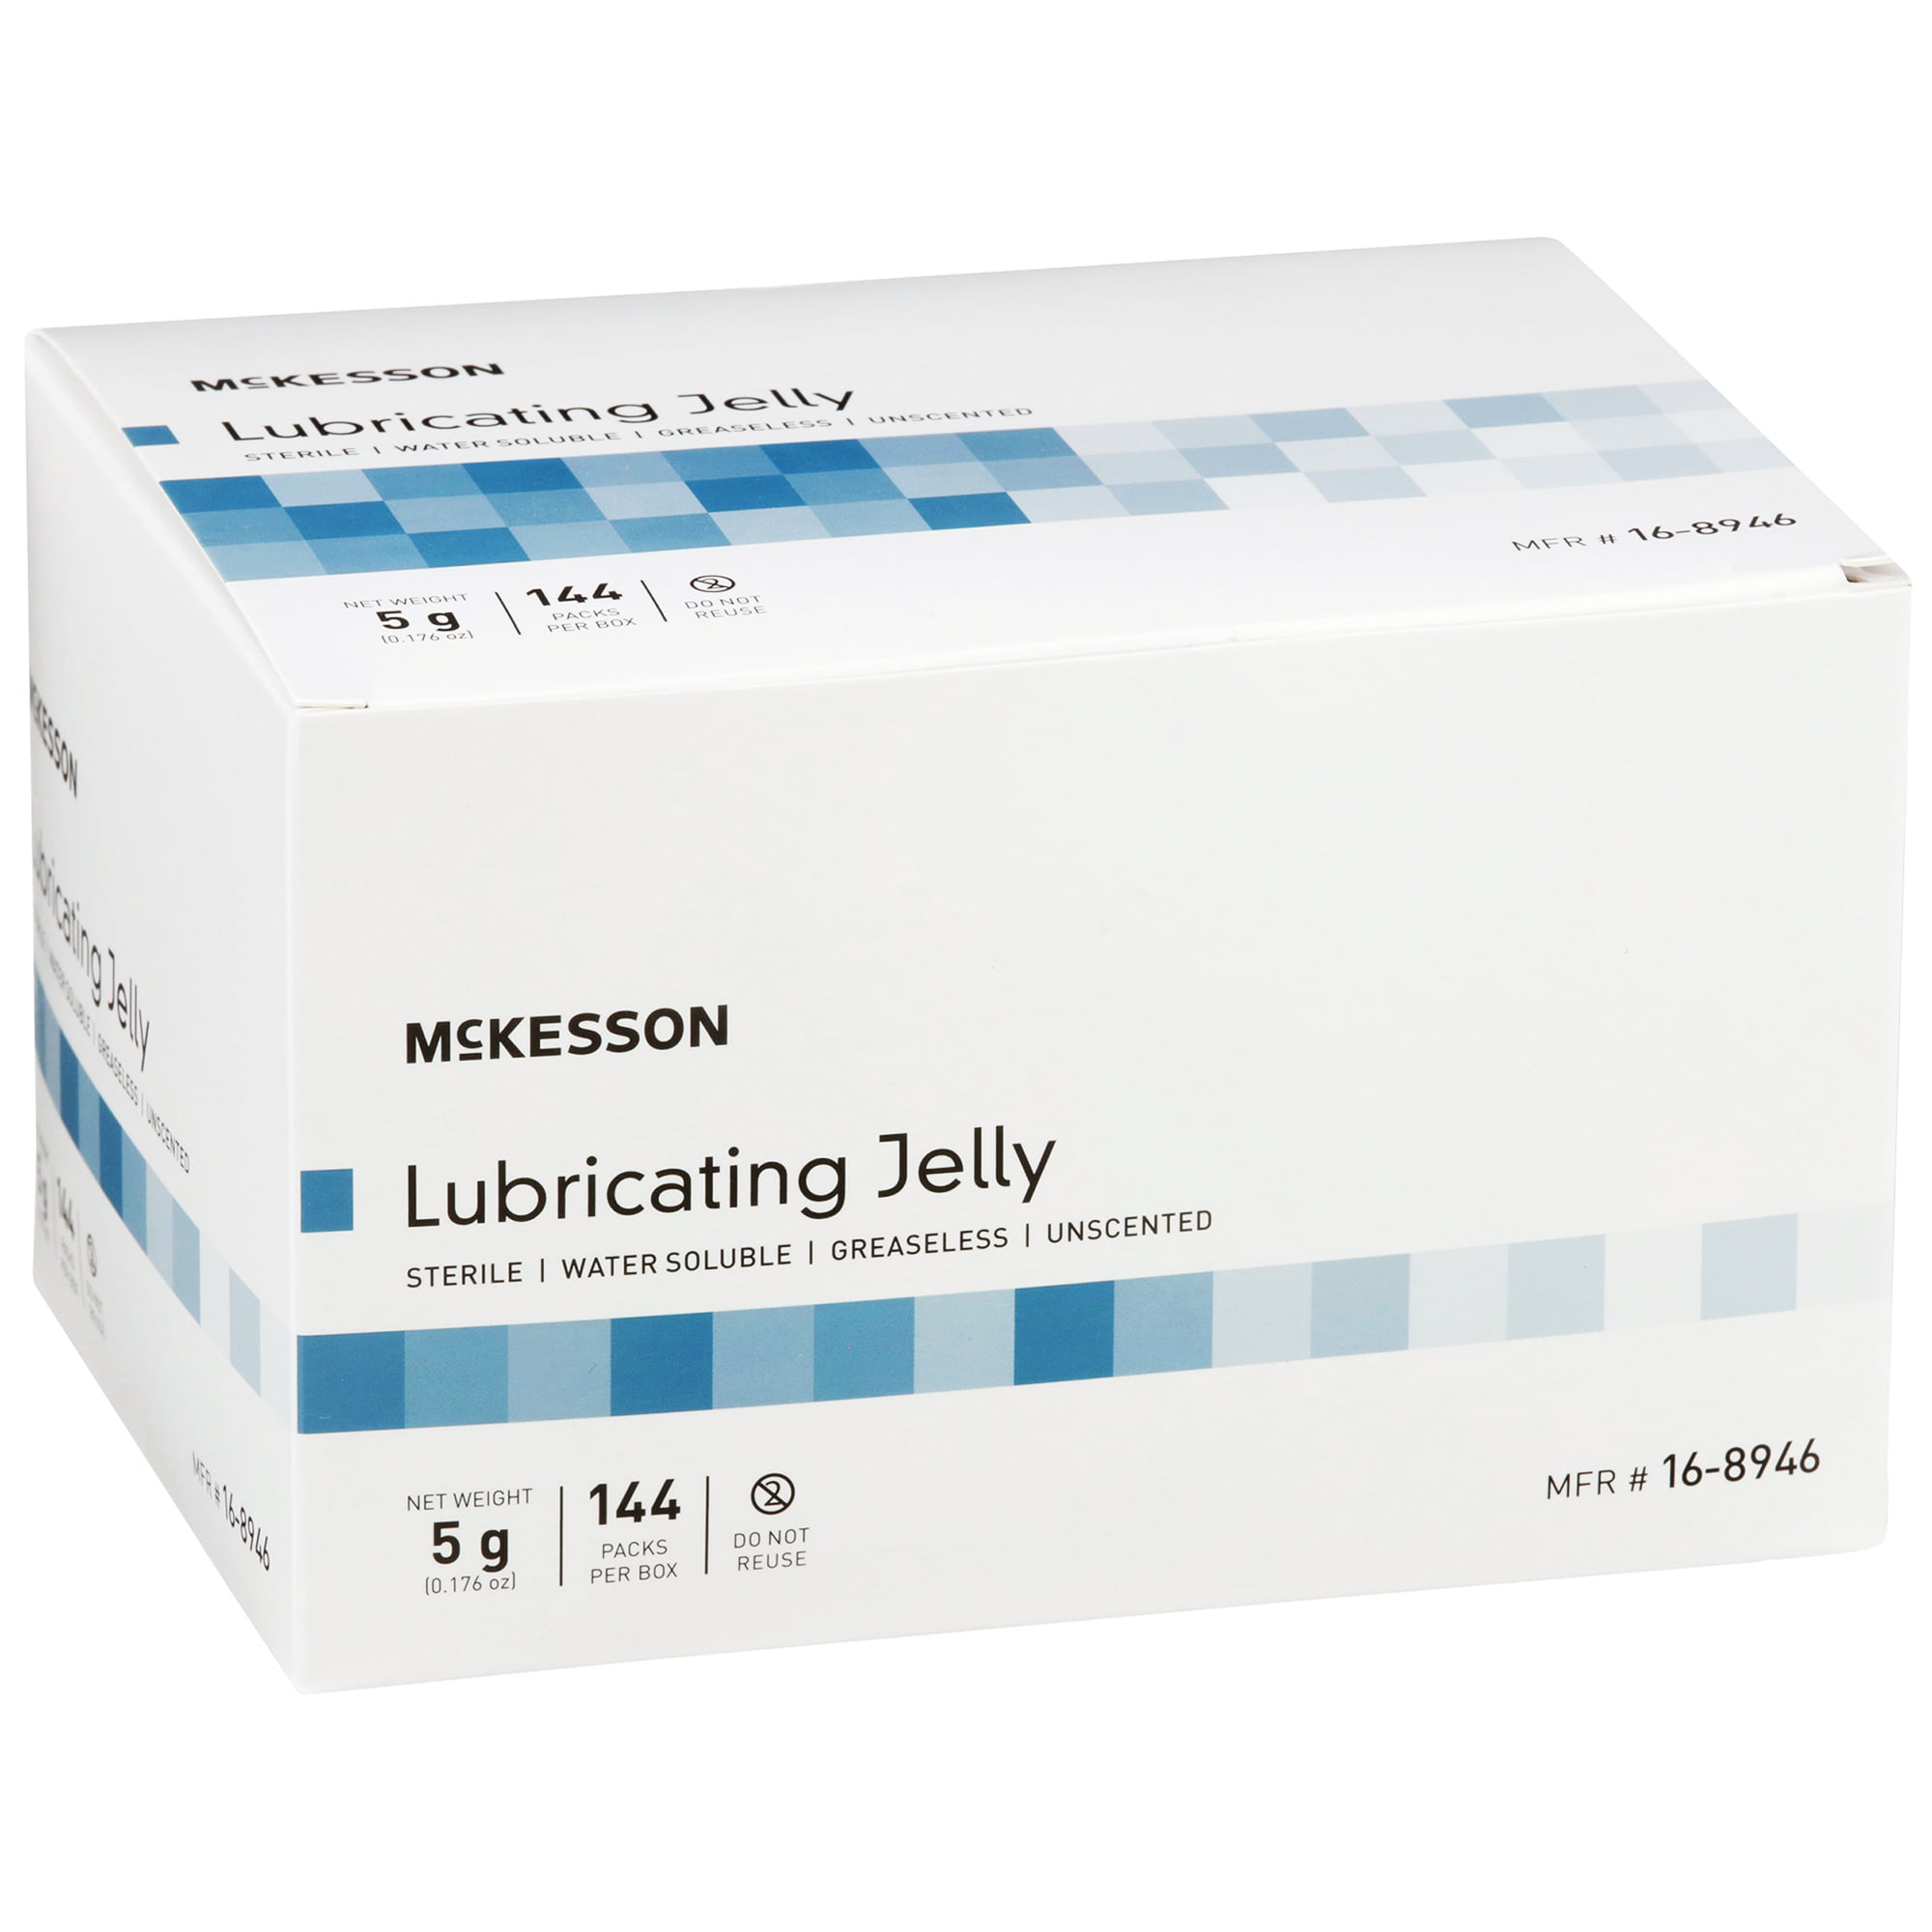 Waxelene multiuse jelly tube 141g - 2 pack